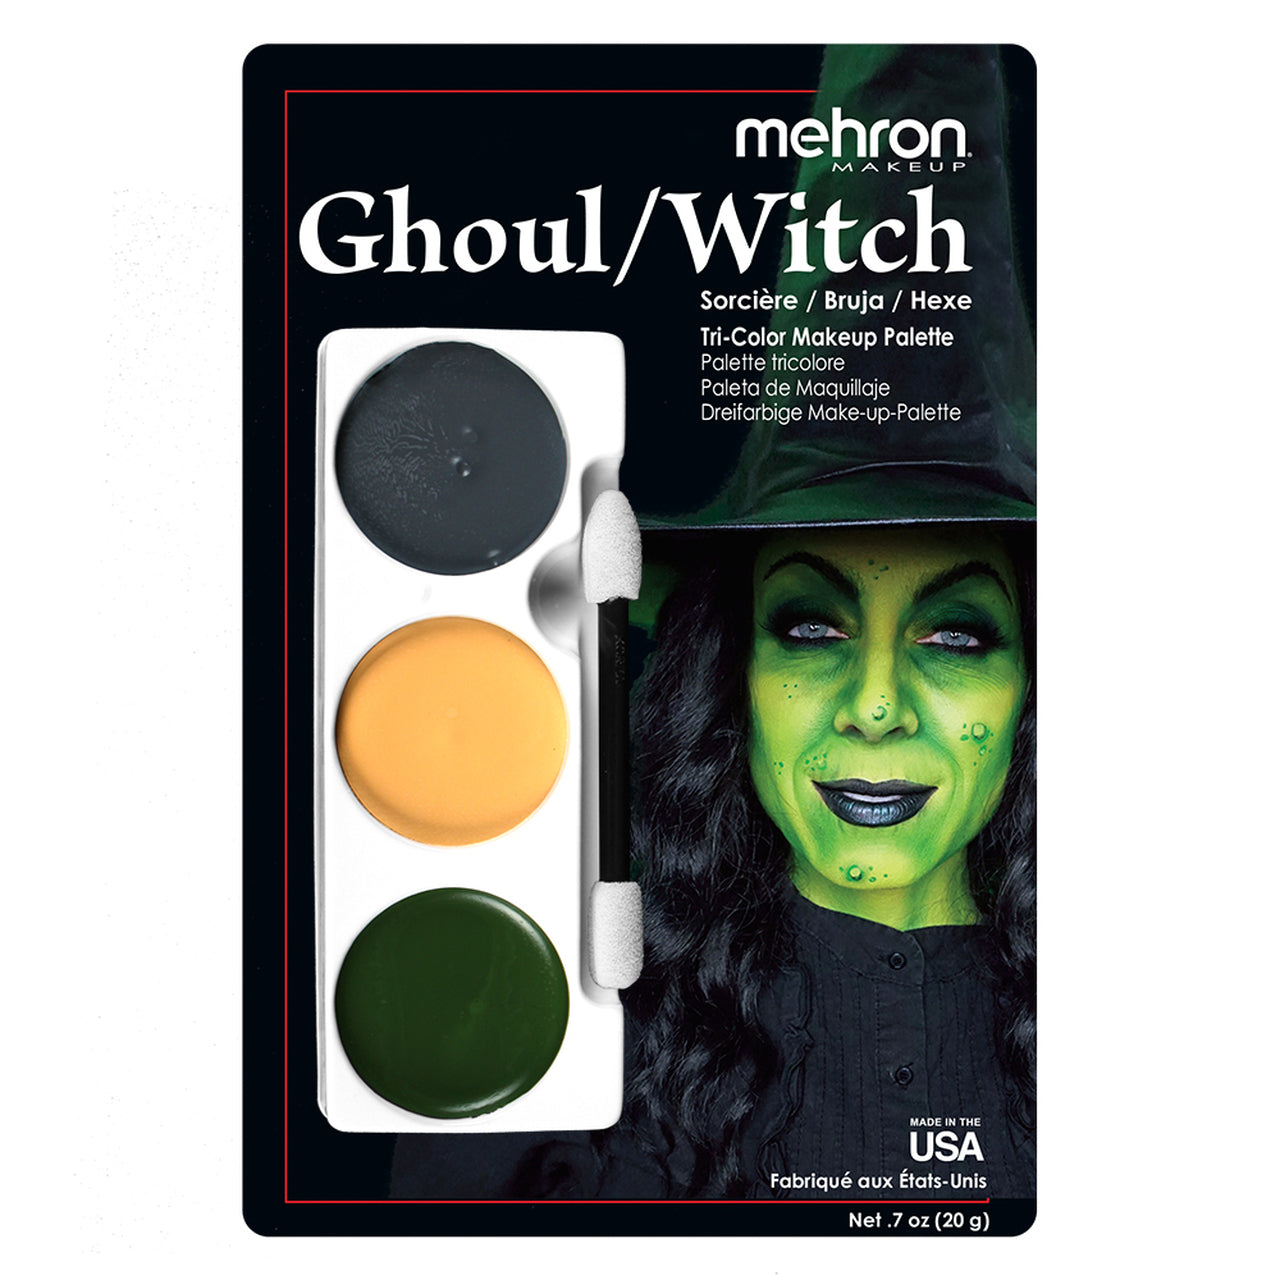 Mehron Tri-Color Character Makeup Palette